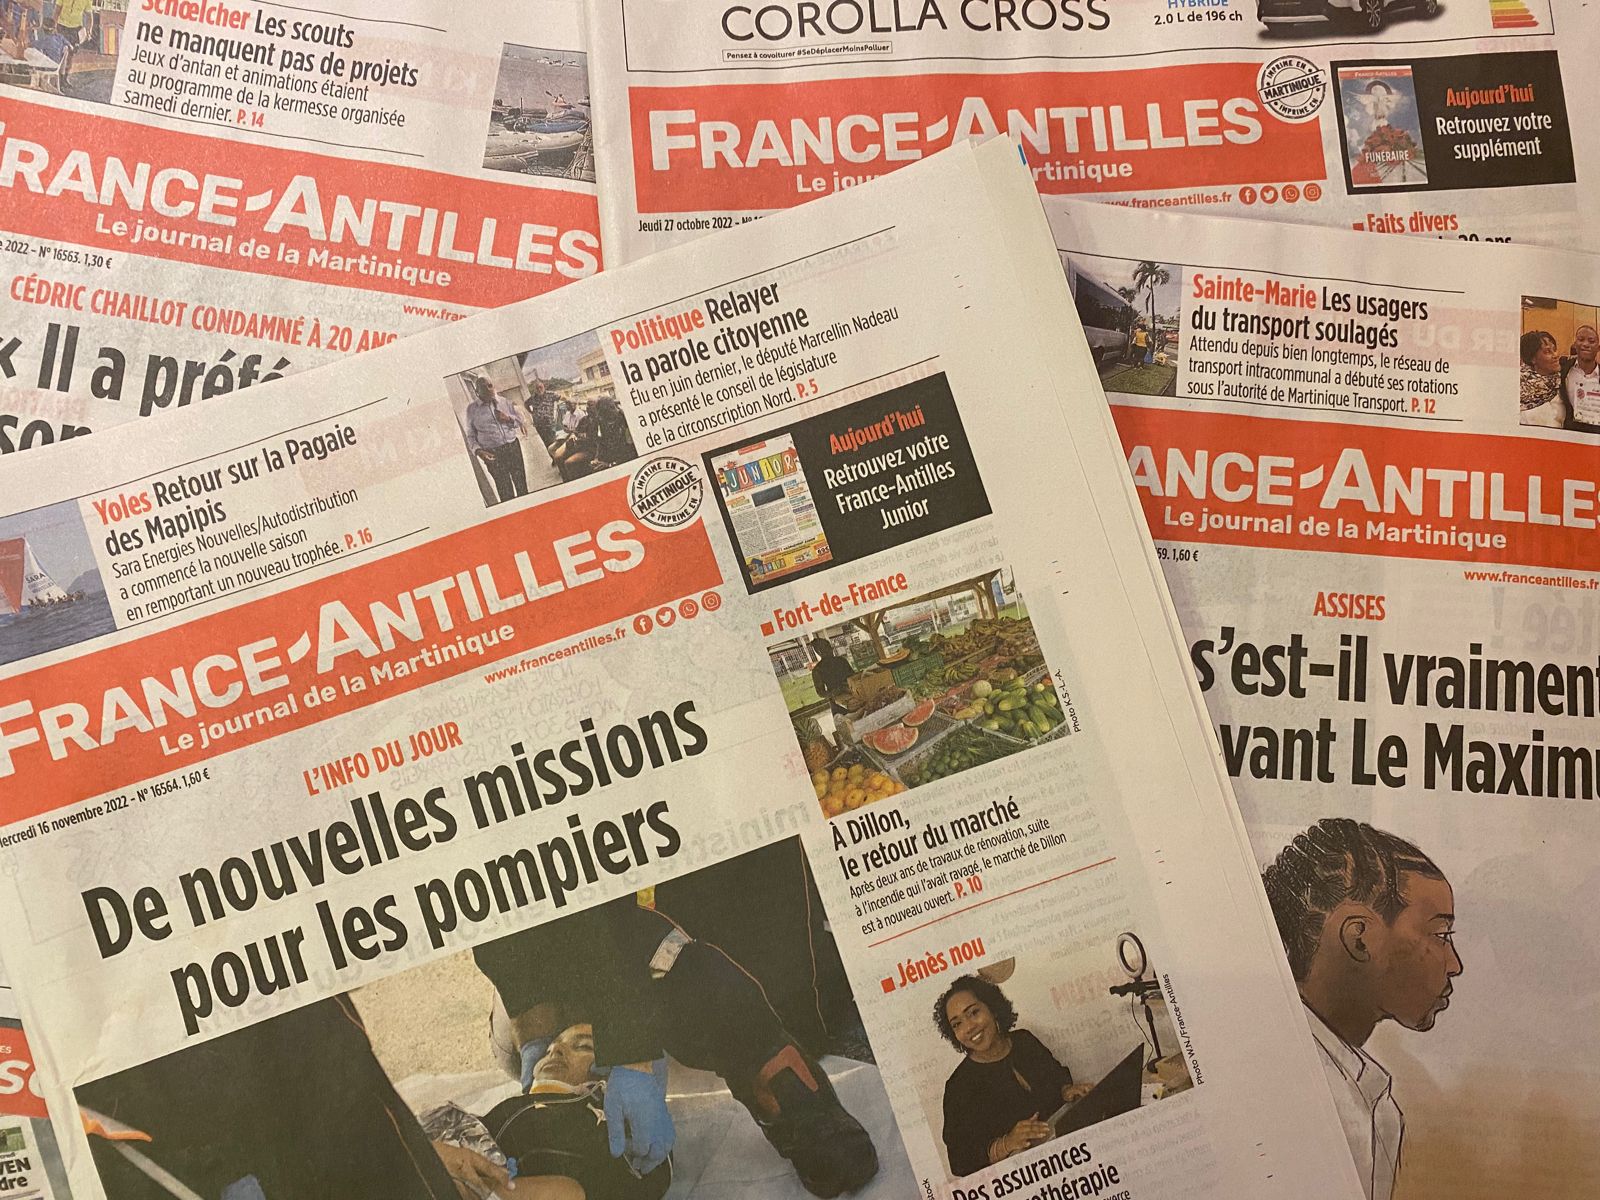     France-Antilles joue son avenir avec un plan de réorganisation

